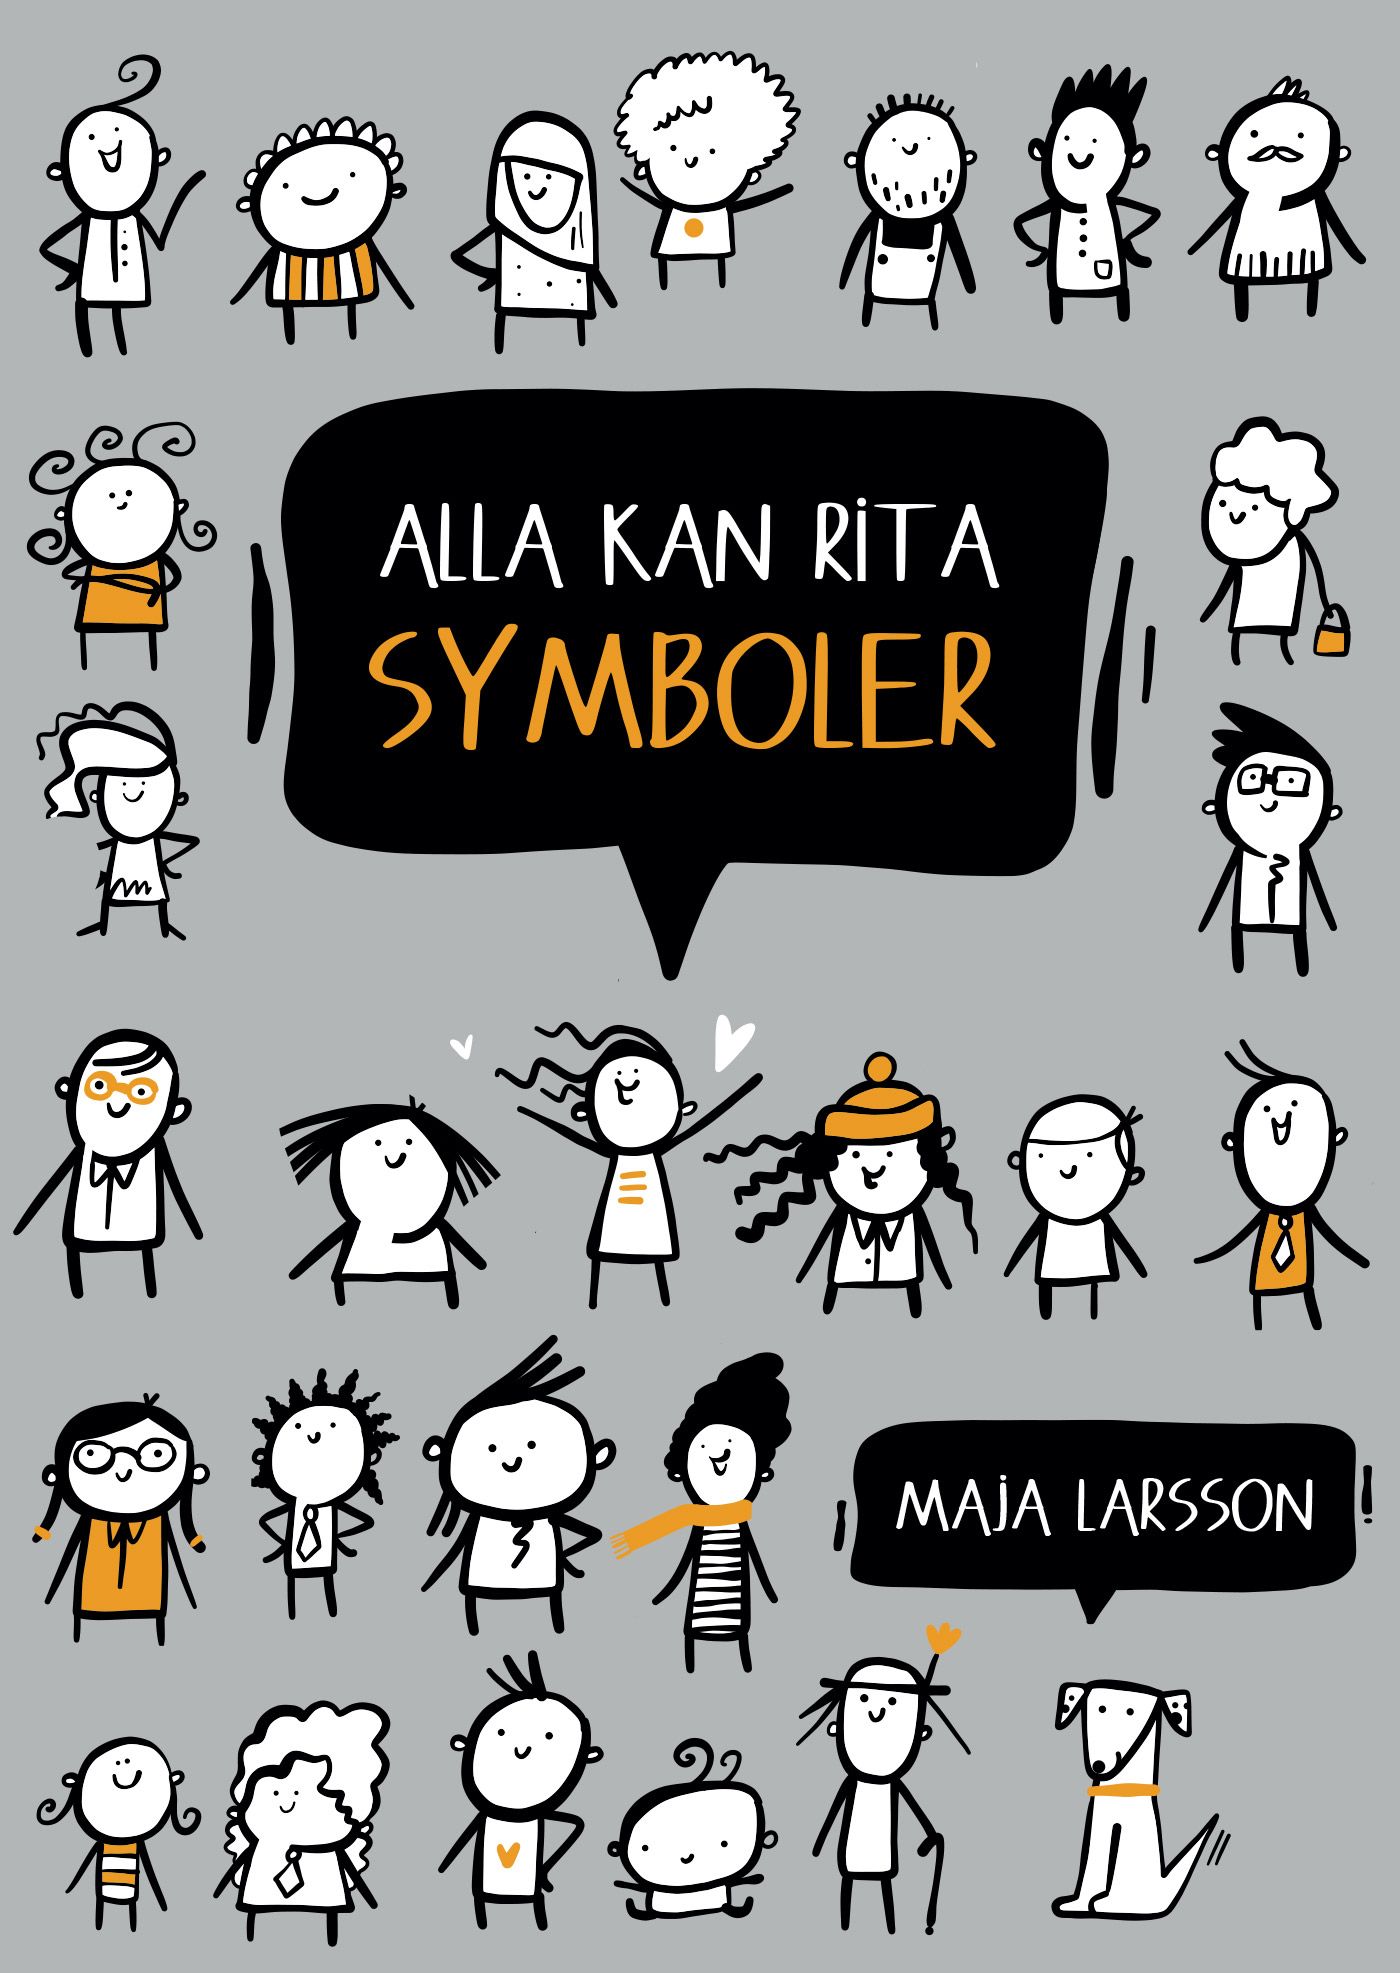 Alla kan rita symboler, eBook by Maja Larsson